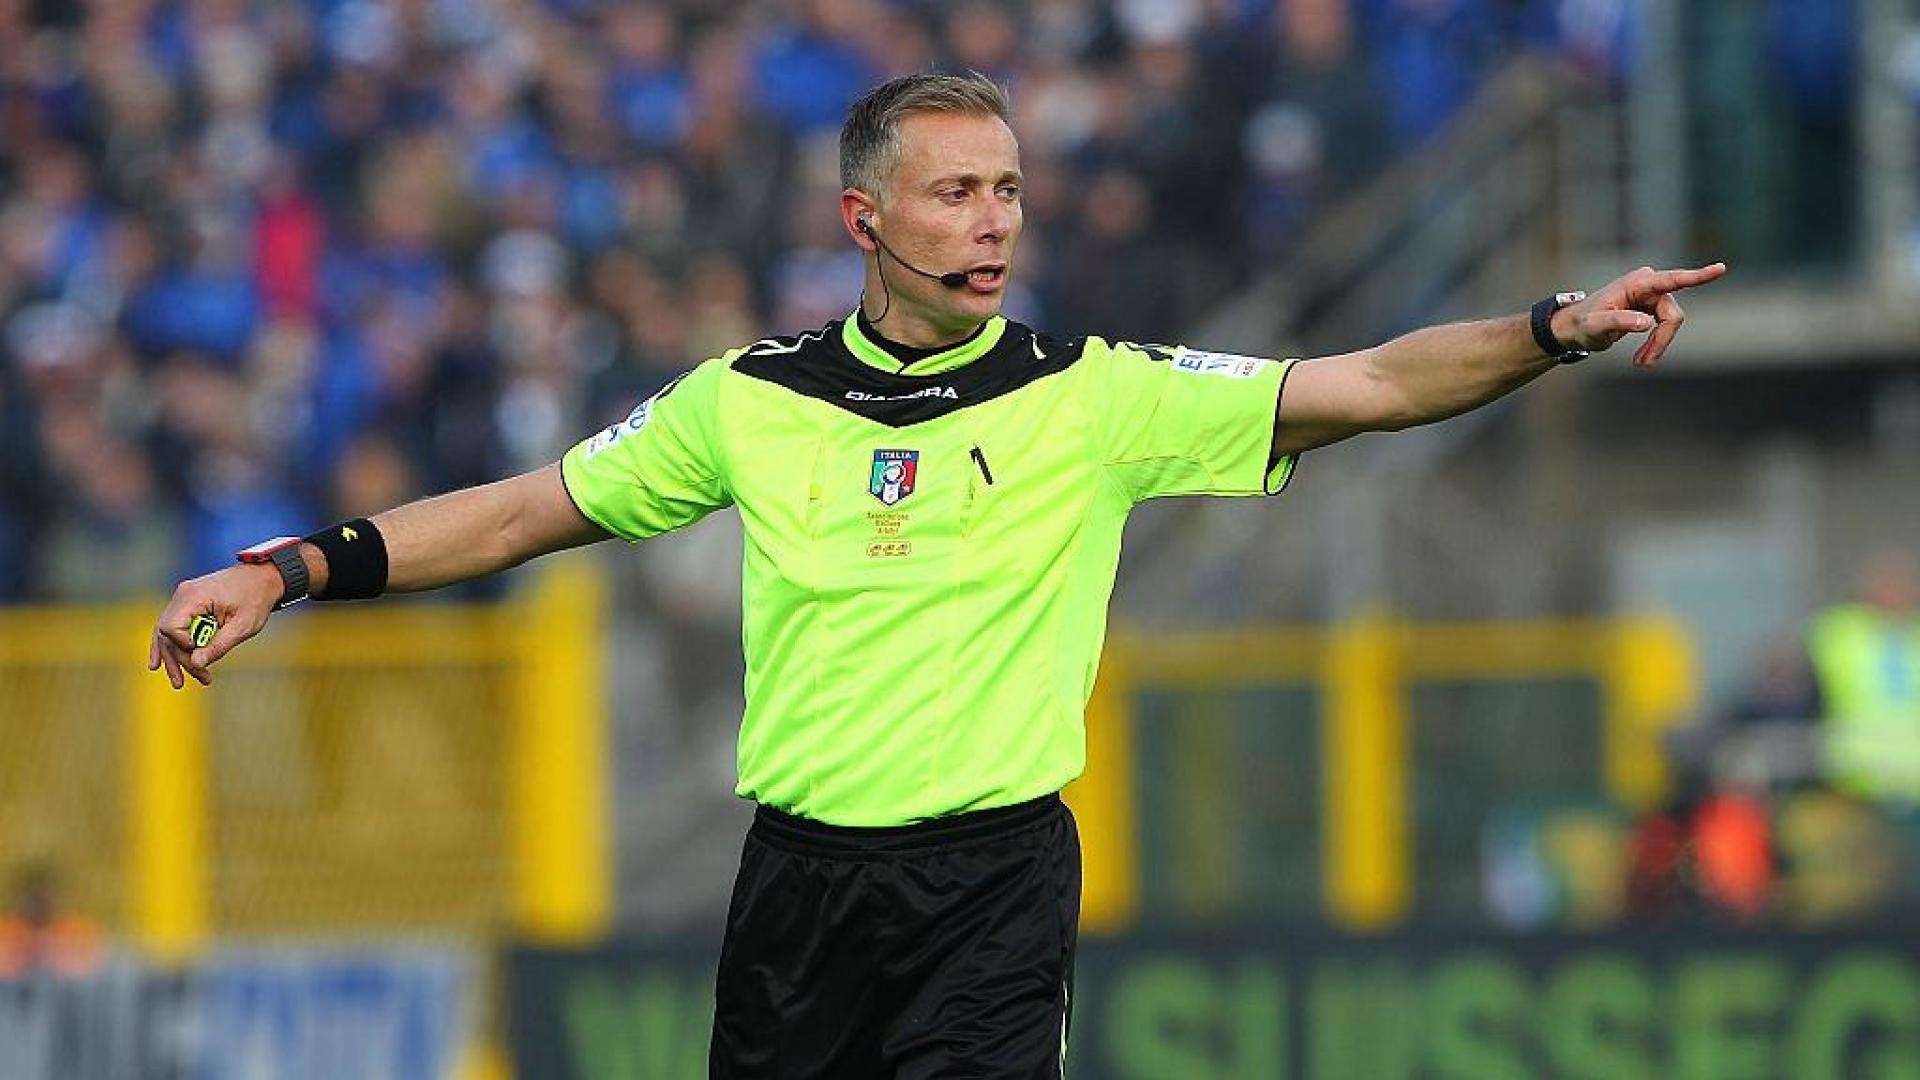 Serie A ‘21/’22 Salernitana-Spezia: referee appointments